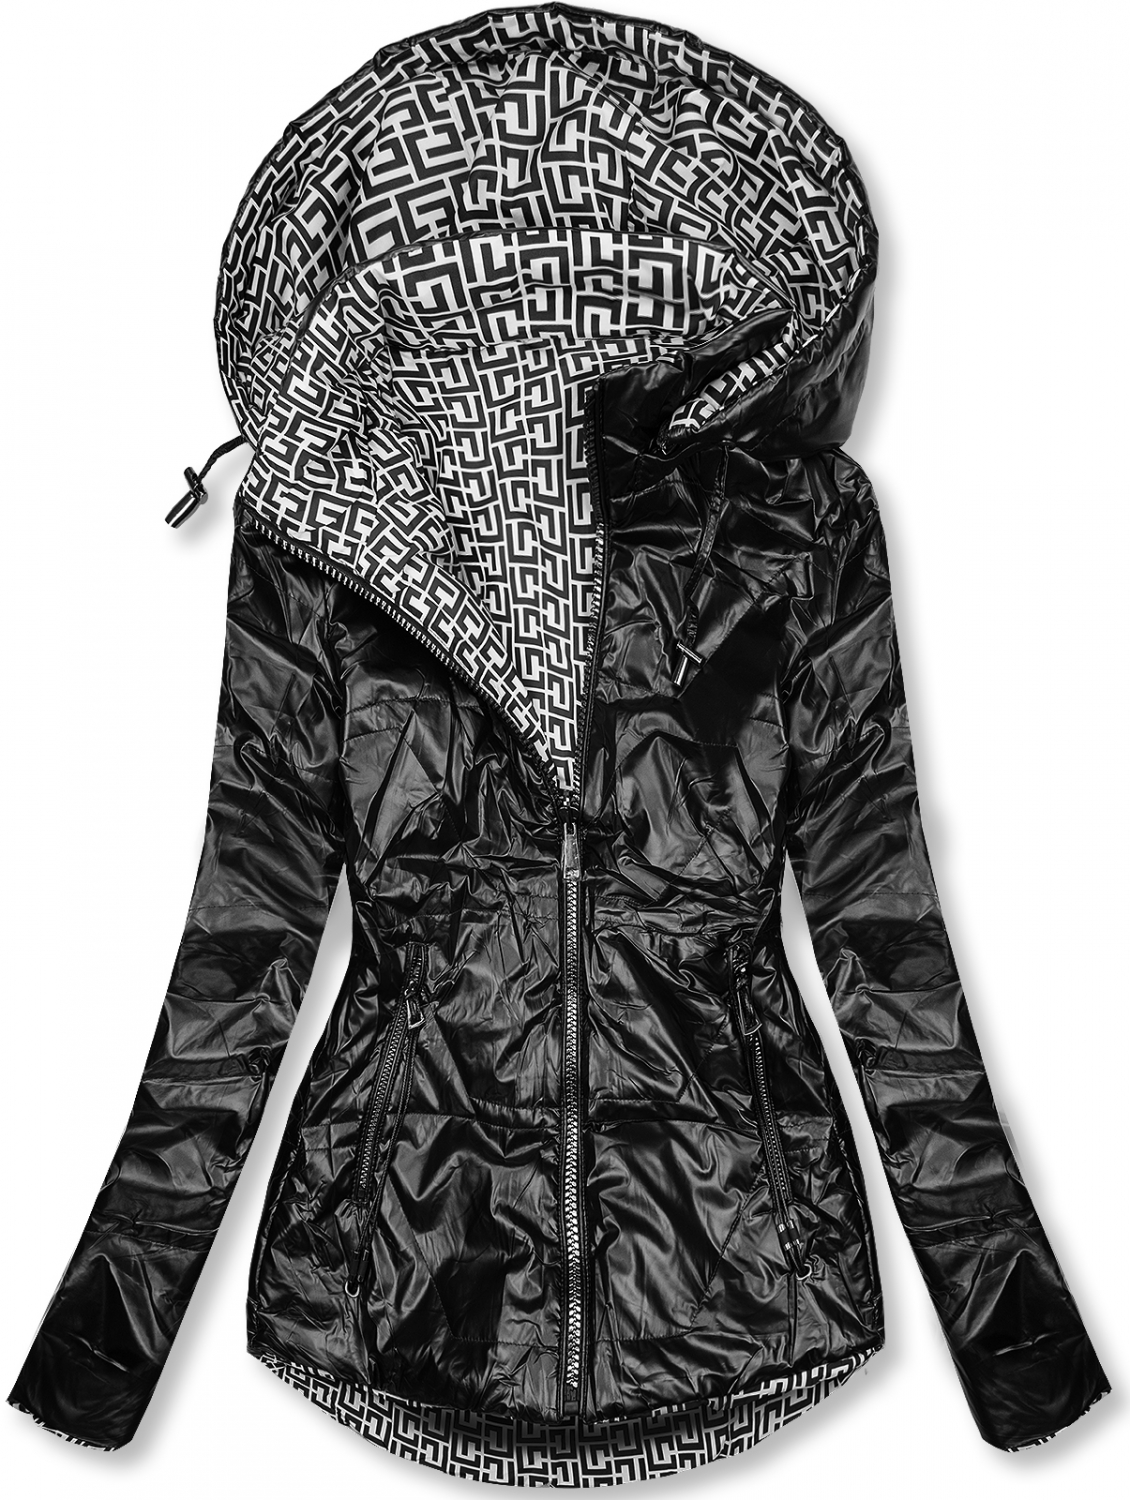 Čierna/biela lesklá obojstranná bunda.
- odopínateľná kapucňa
- zapínanie na zips
- kovové detaily v striebornej farbe
- dve predné vrecká
- materiál: 100% polyester, podšívka: 100% polyester